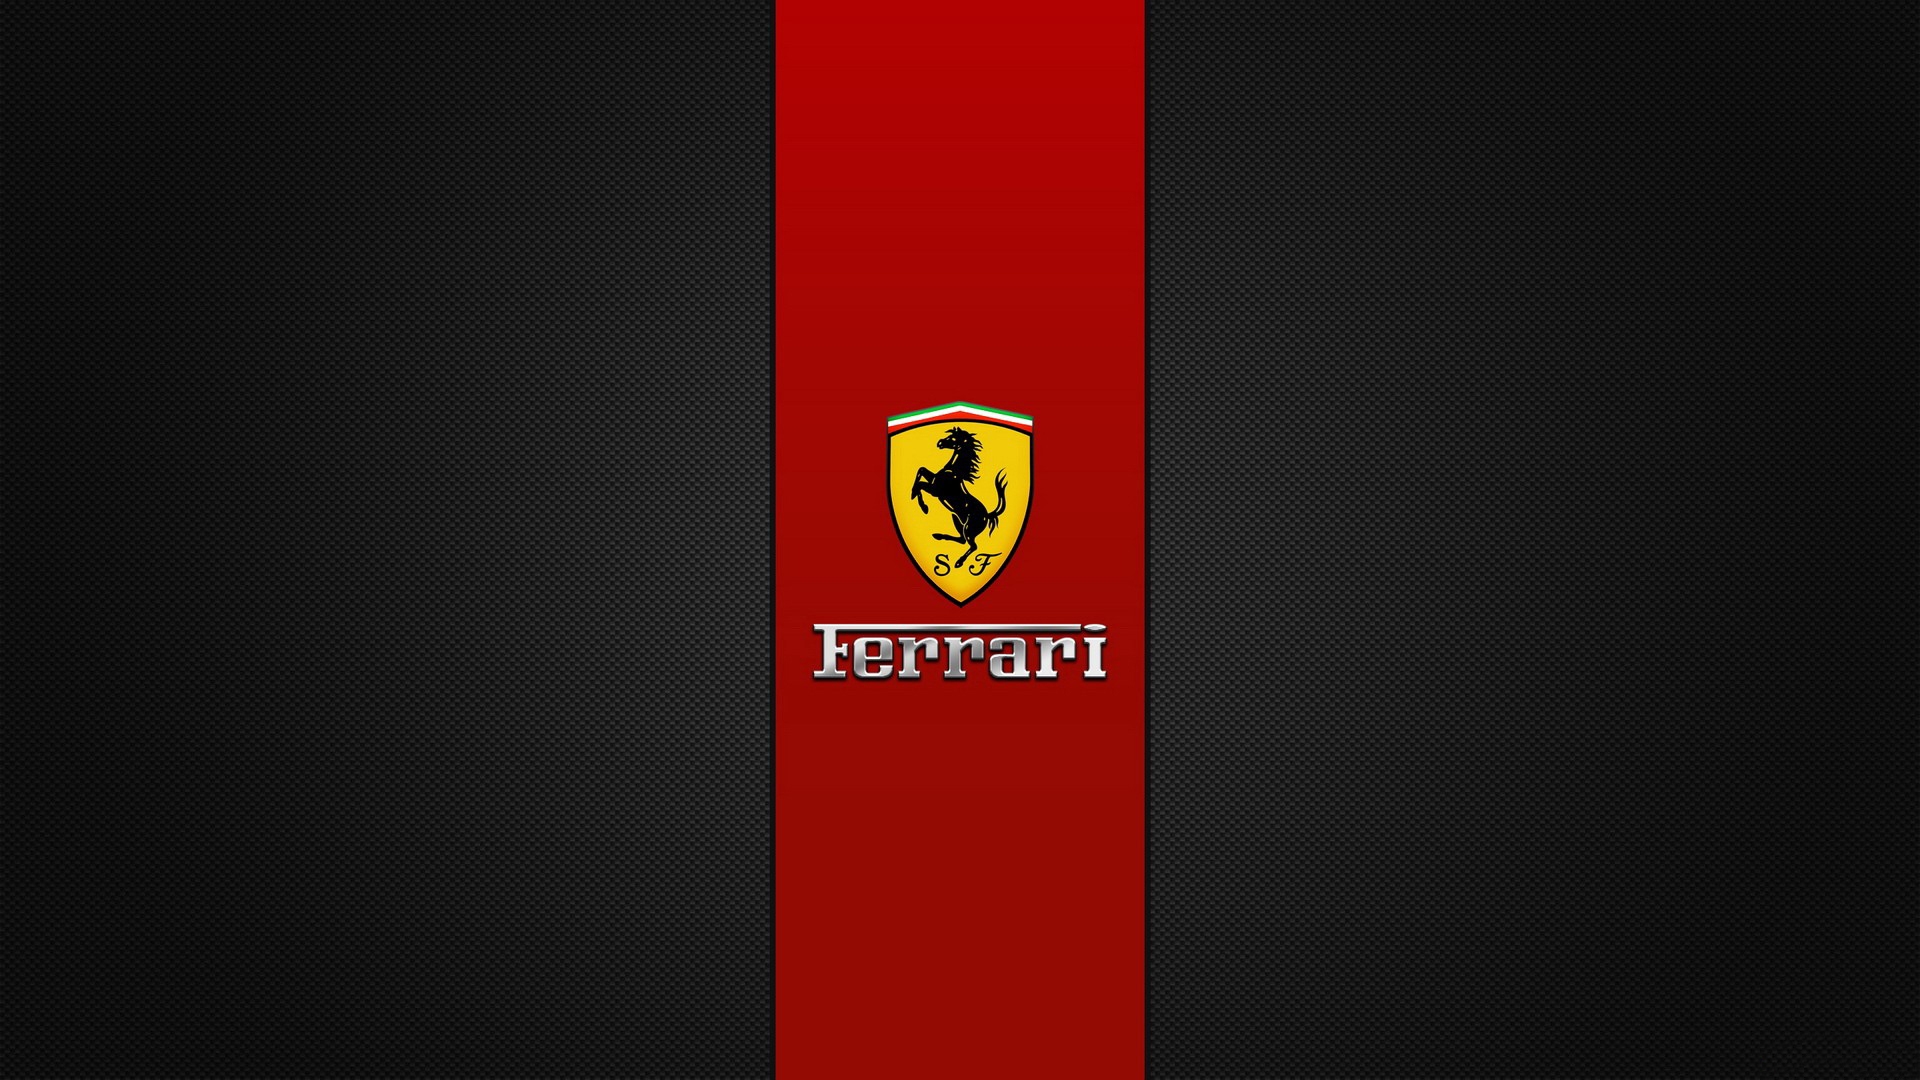 Ferrari Brand Logo for 1920 x 1080 HDTV 1080p resolution